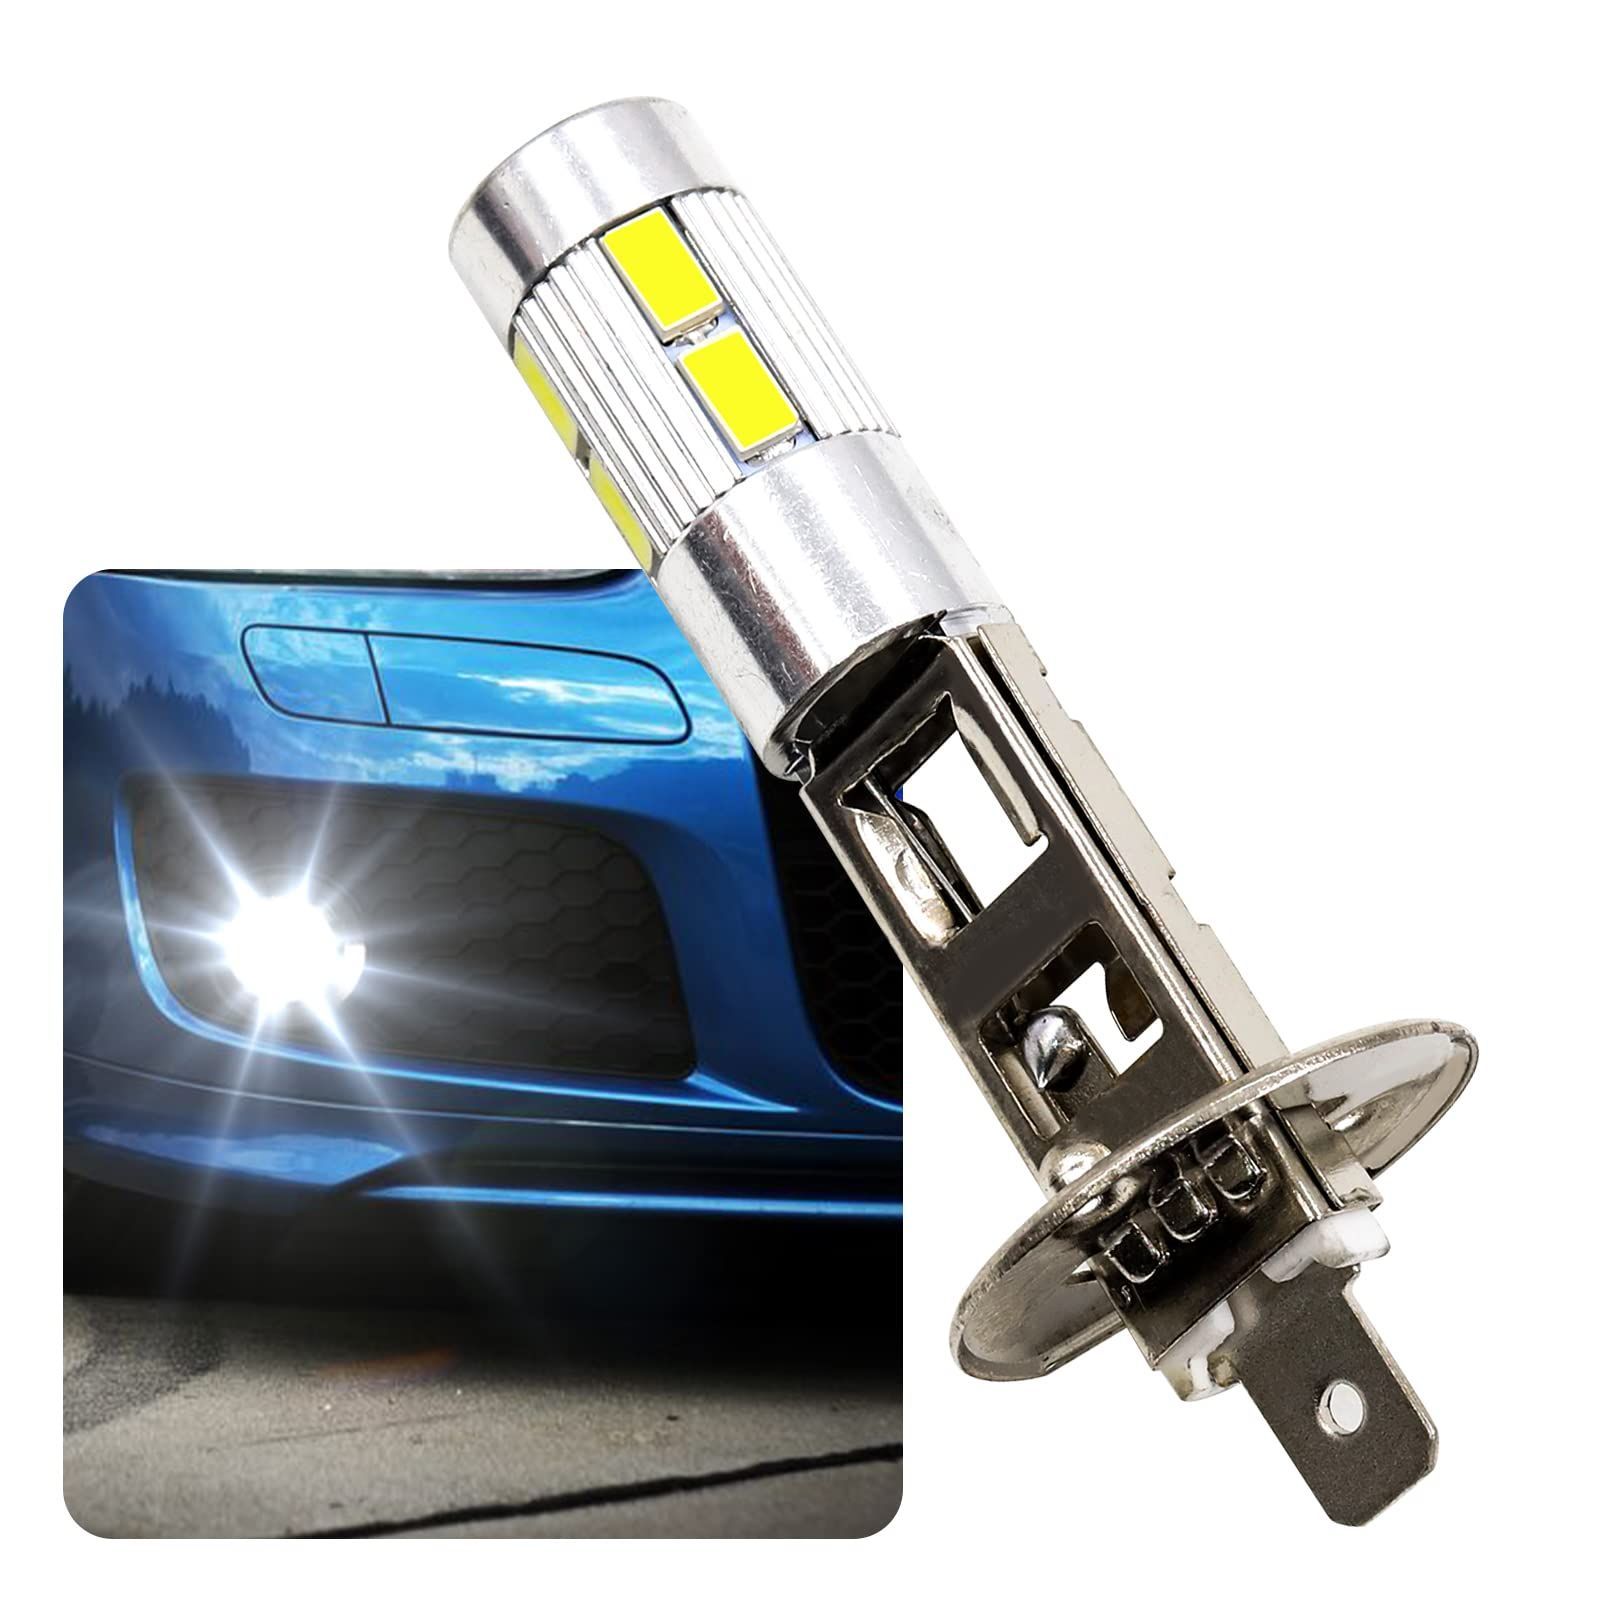 新品 H1 H1 車用 ファンレス LEDヘッドライト 高輝度耐久 ノイズレス LEDバルブ 360度発光 高速放熱 12V コンパクト LED  6000Kホワイト配色 LEDランプ フォグランプ LEDライト H1 Aoling 2個セット - メルカリ